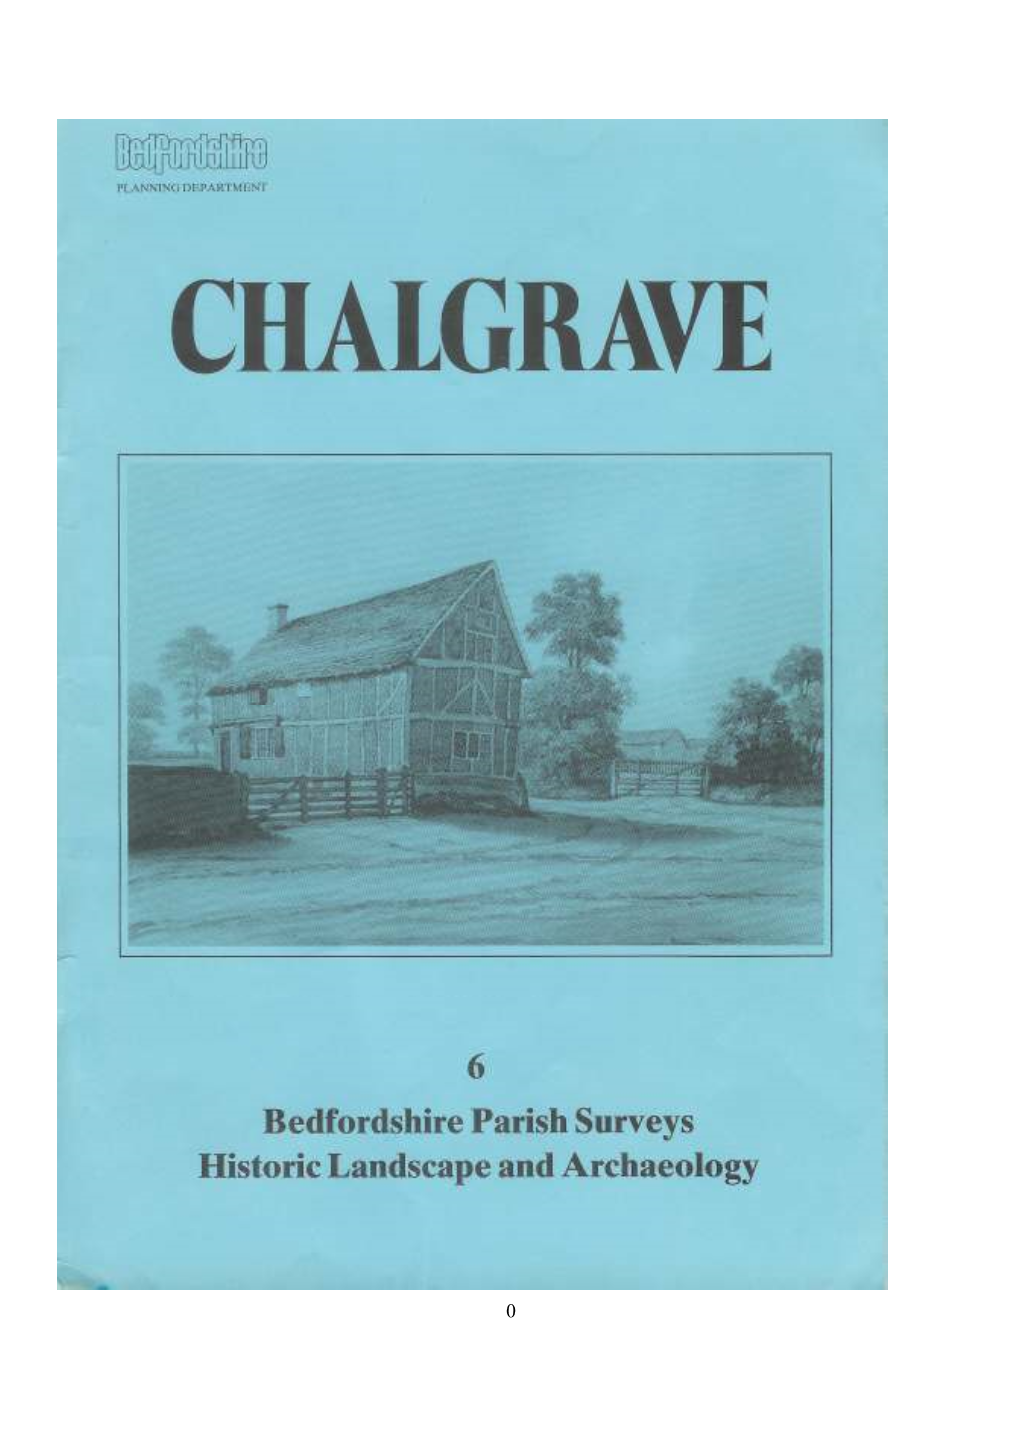 Chalgrave Survey 1986